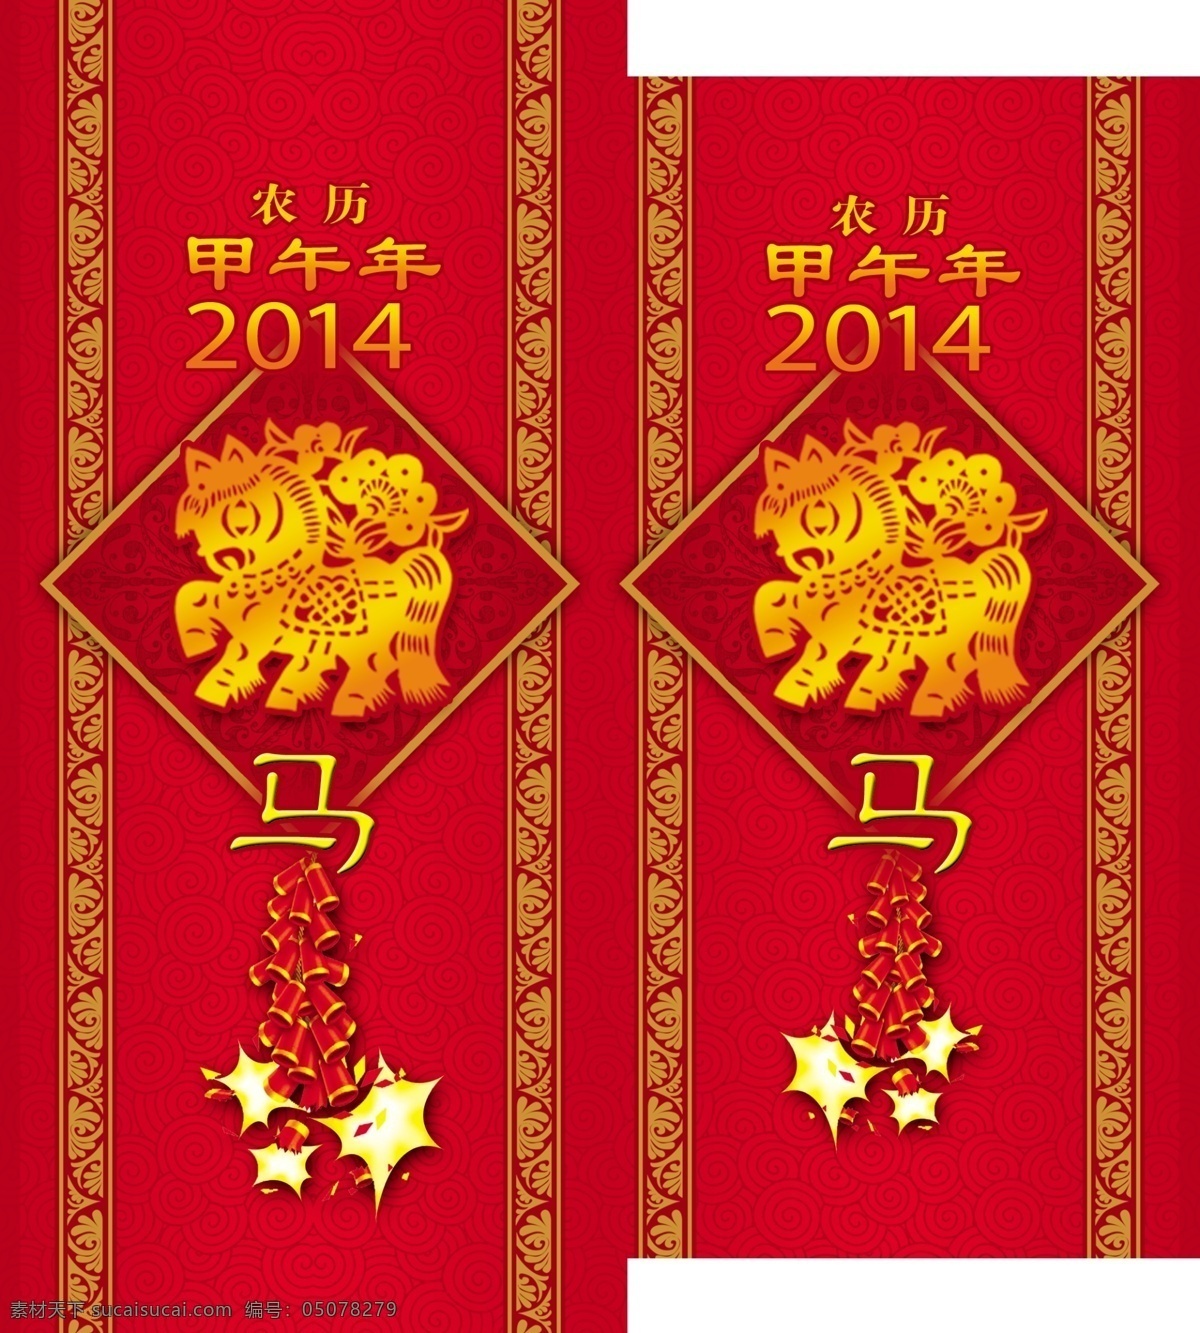 红包 2014 ps 春节 福 红包模板下载 甲午年 节日素材 马年 源文件 2015羊年